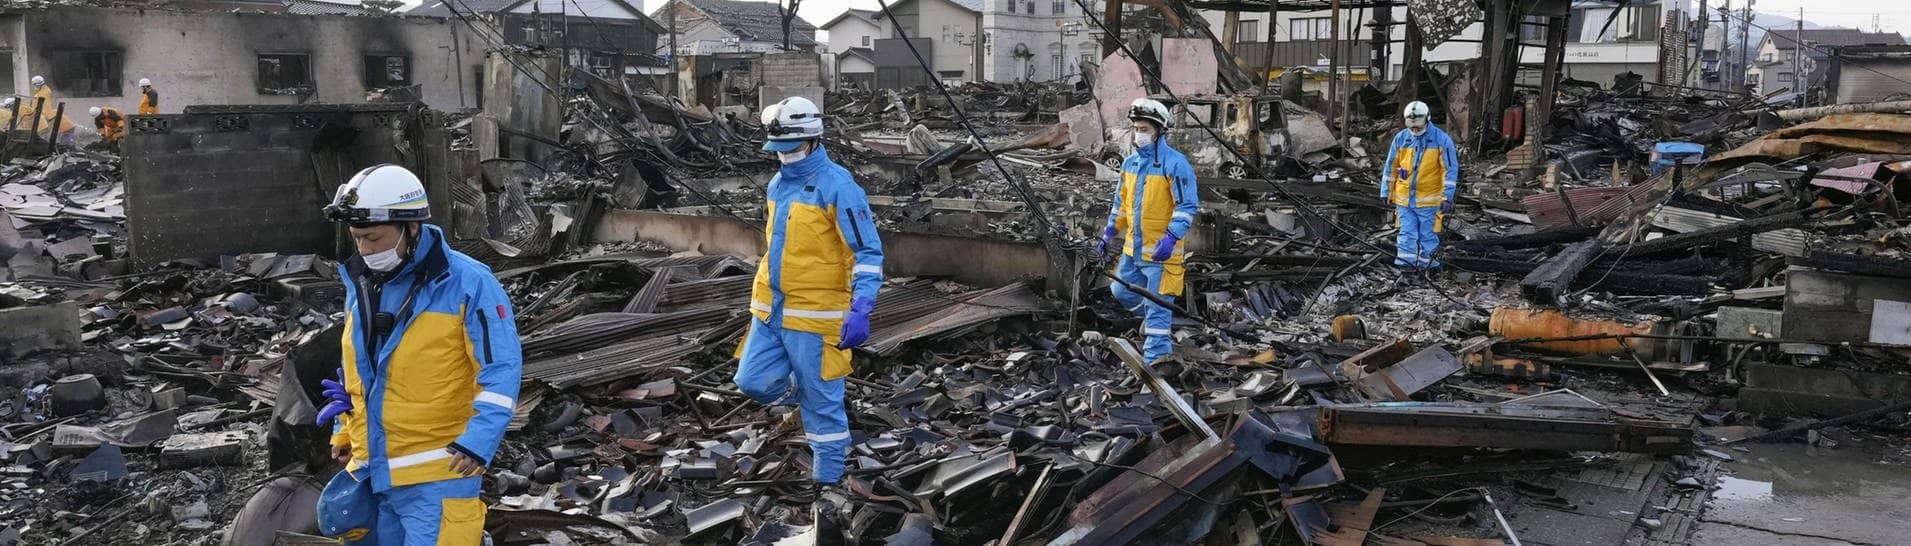 Polizeibeamte inspizieren den ehemaligen Standort eines Marktes in der Präfektur Ishikawa, nachdem der berühmte Touristenort bei einem Feuer abgebrannt war, das nach einem starken Erdbeben ausgebrochen war.